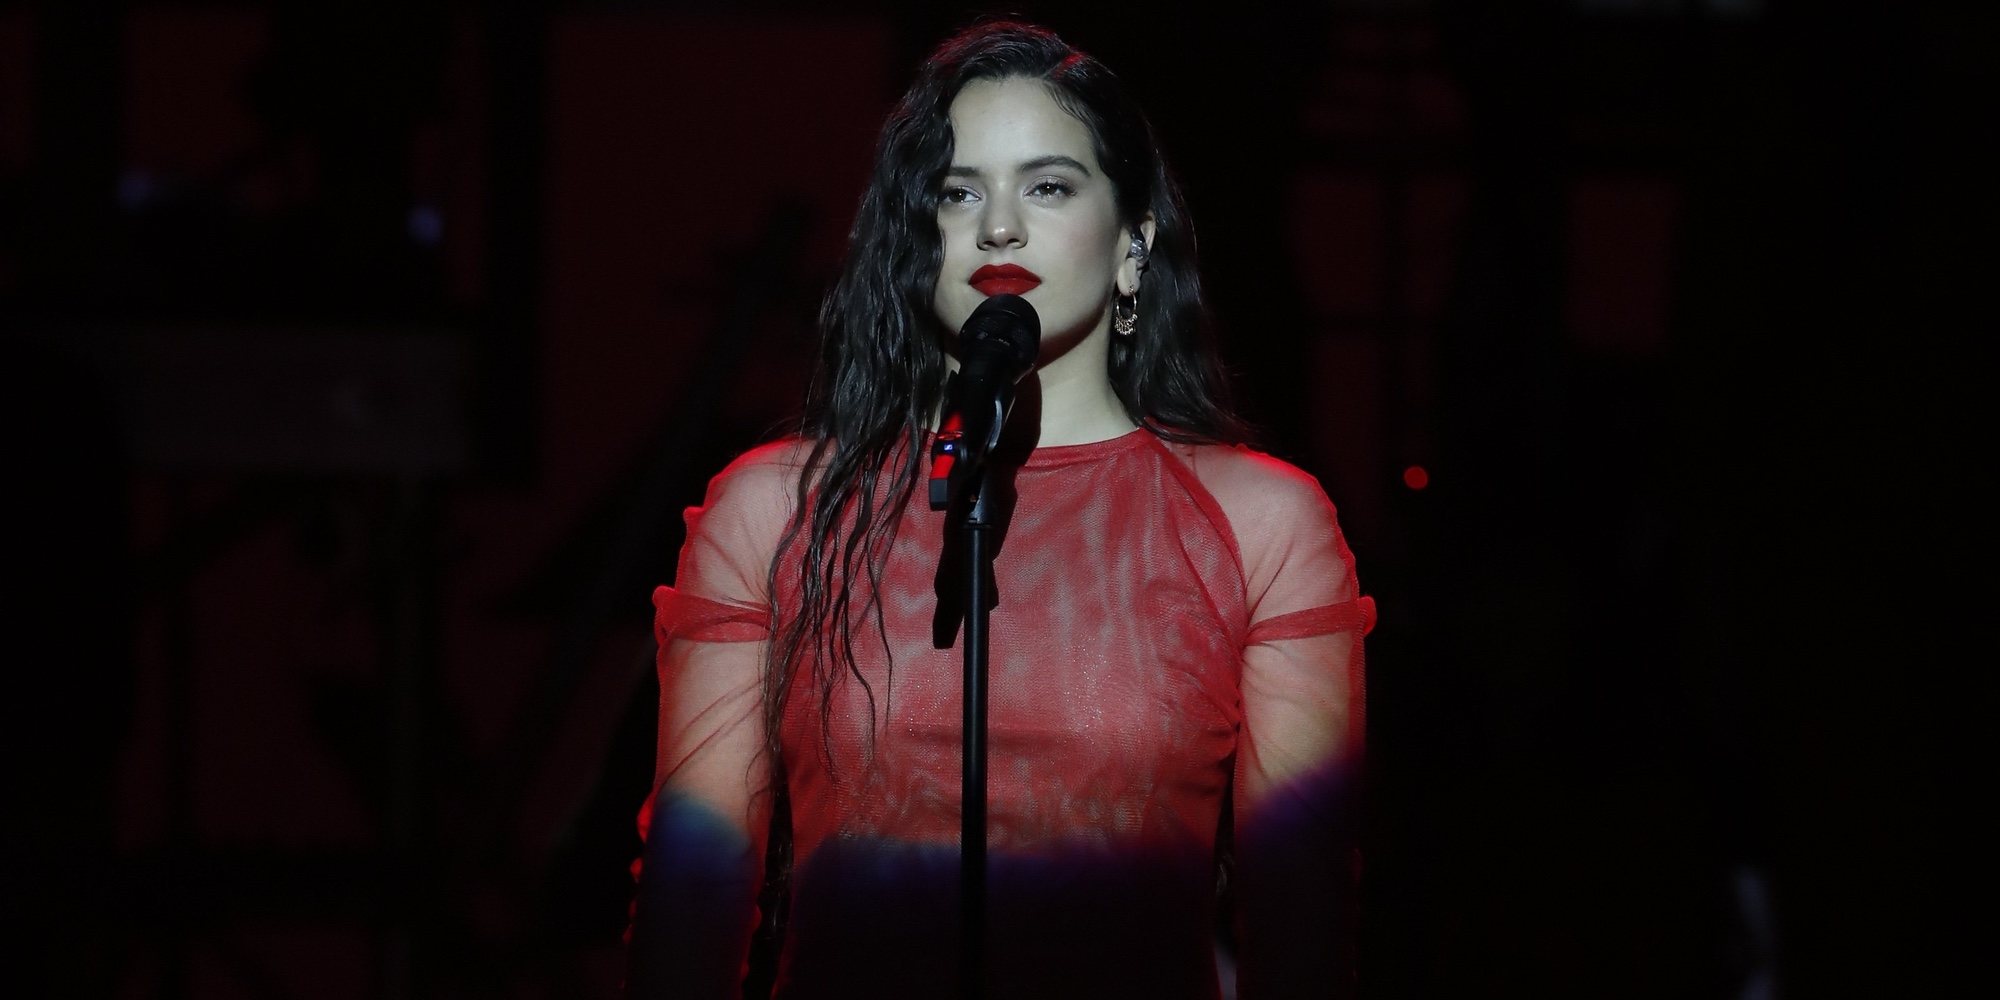 tremenda actuación de Rosalía en los Premios 2019: acompañada un coro cantando quedo contigo' - Bekia Actualidad